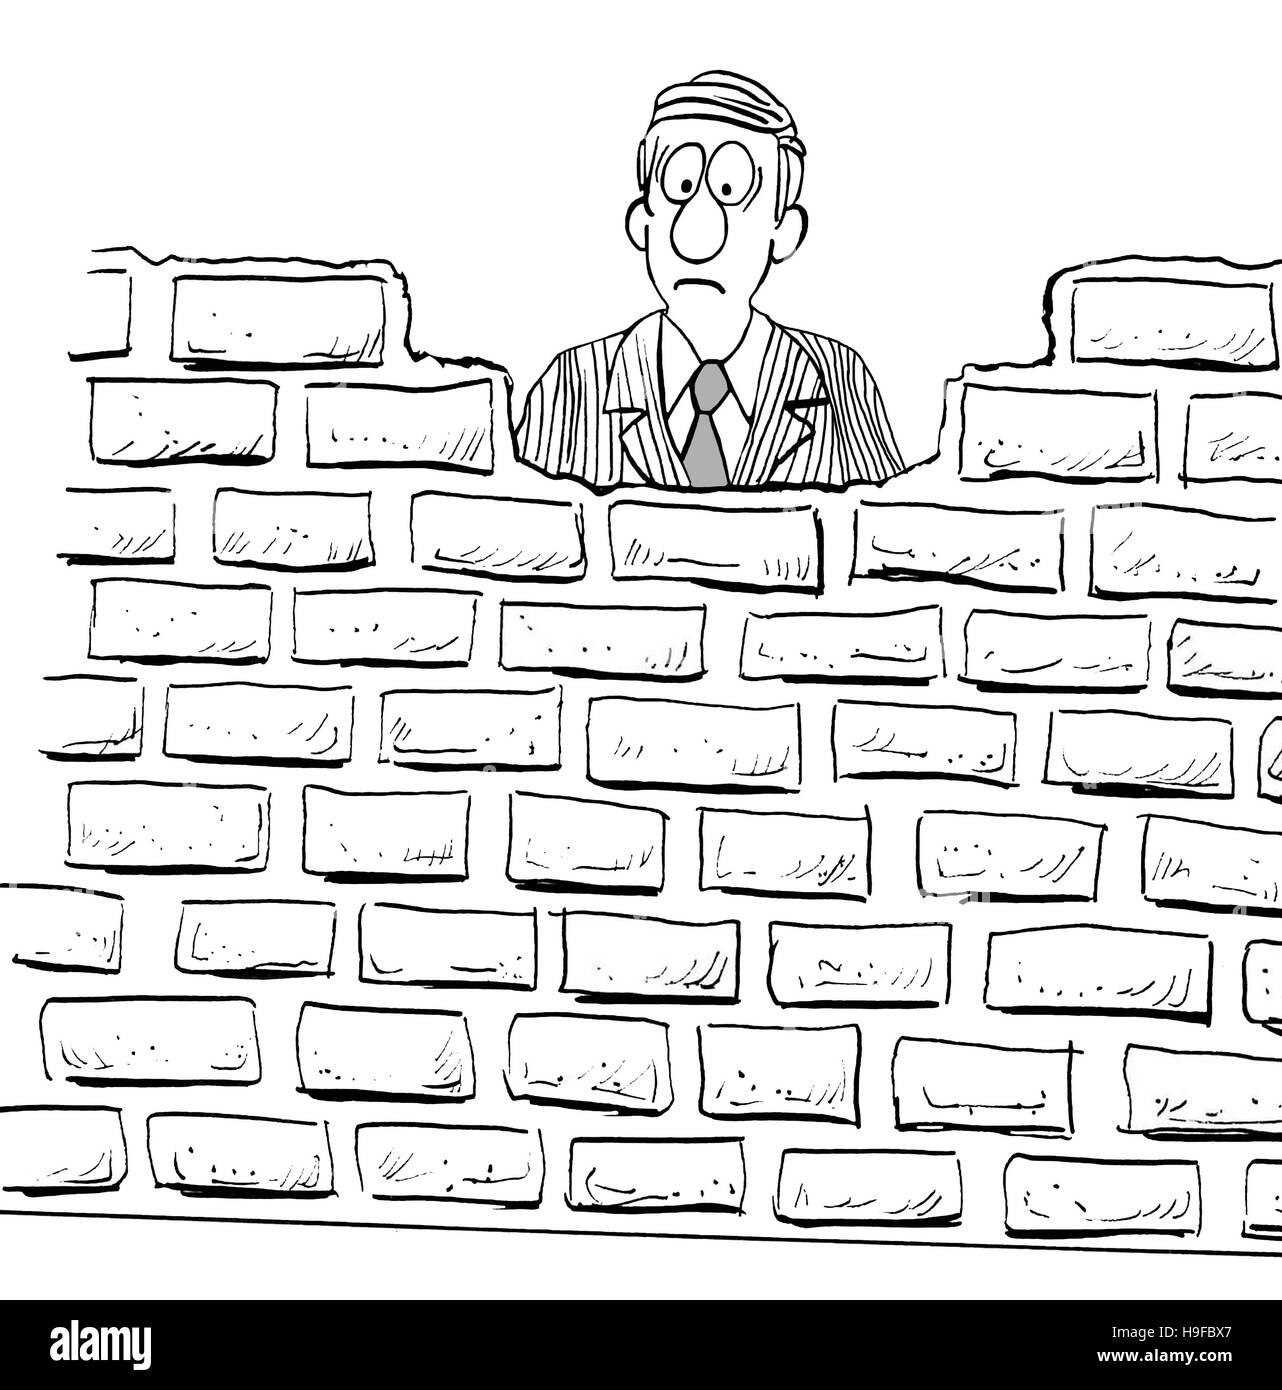 Schwarz / weiß Darstellung eines entmutigt Mannes durch eine große Mauer blockiert. Stockfoto